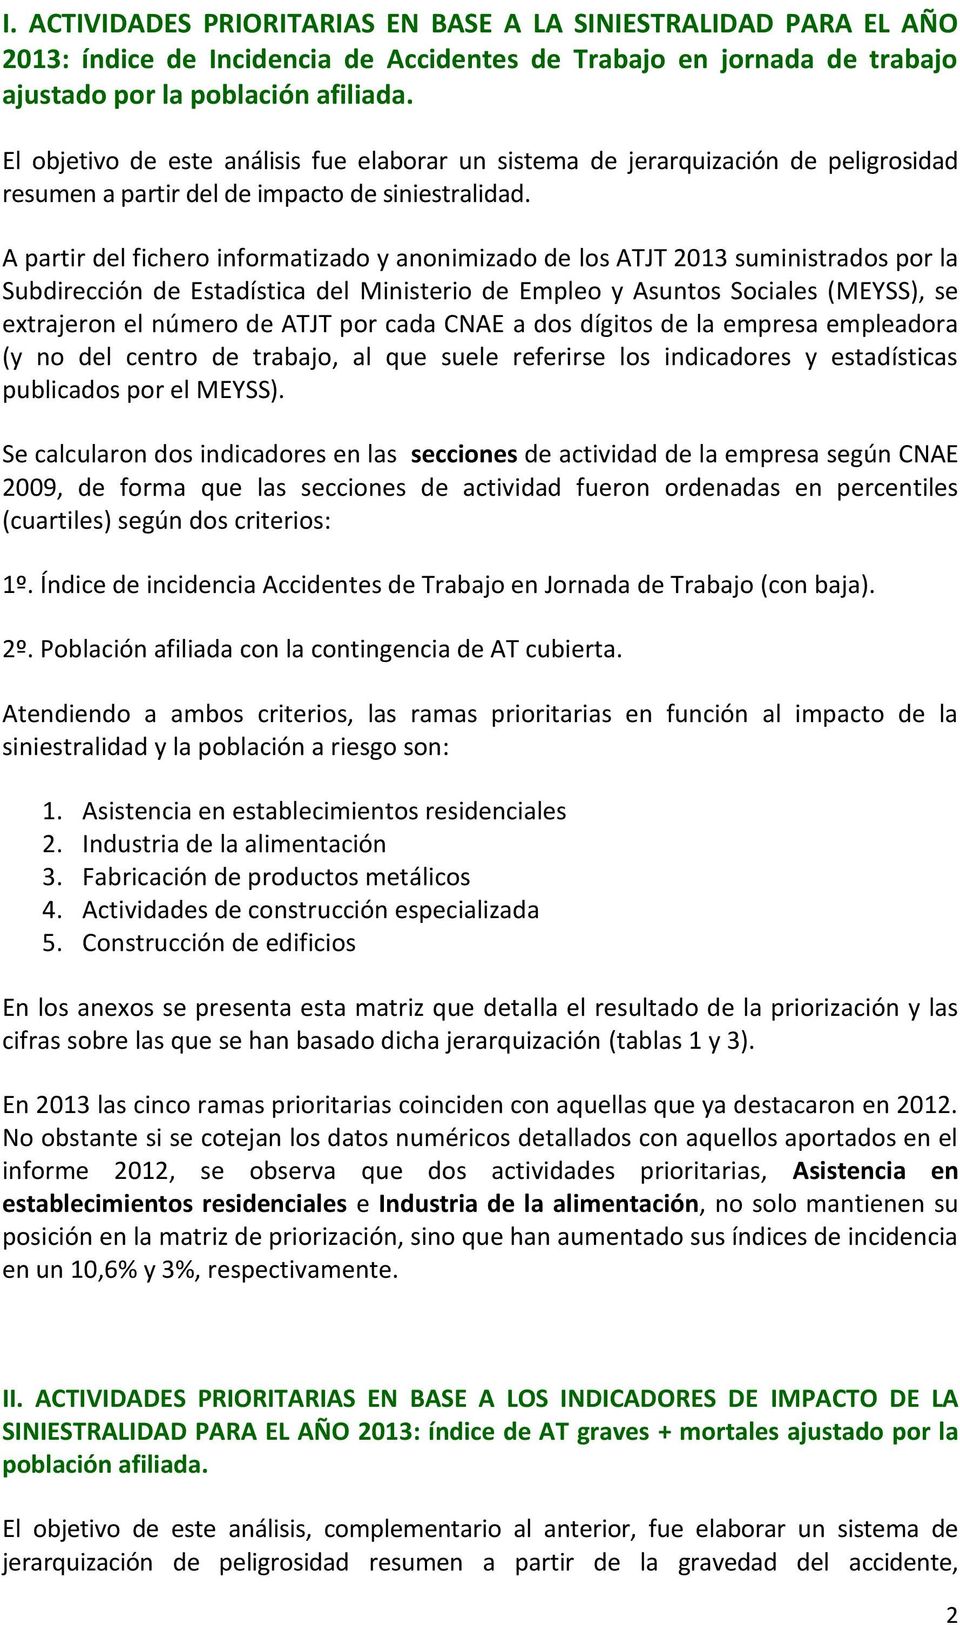 A partir del fichero informatizado y anonimizado de los ATJT 2013 suministrados por la Subdirección de Estadística del Ministerio de Empleo y Asuntos Sociales (MEYSS), se extrajeron el número de ATJT